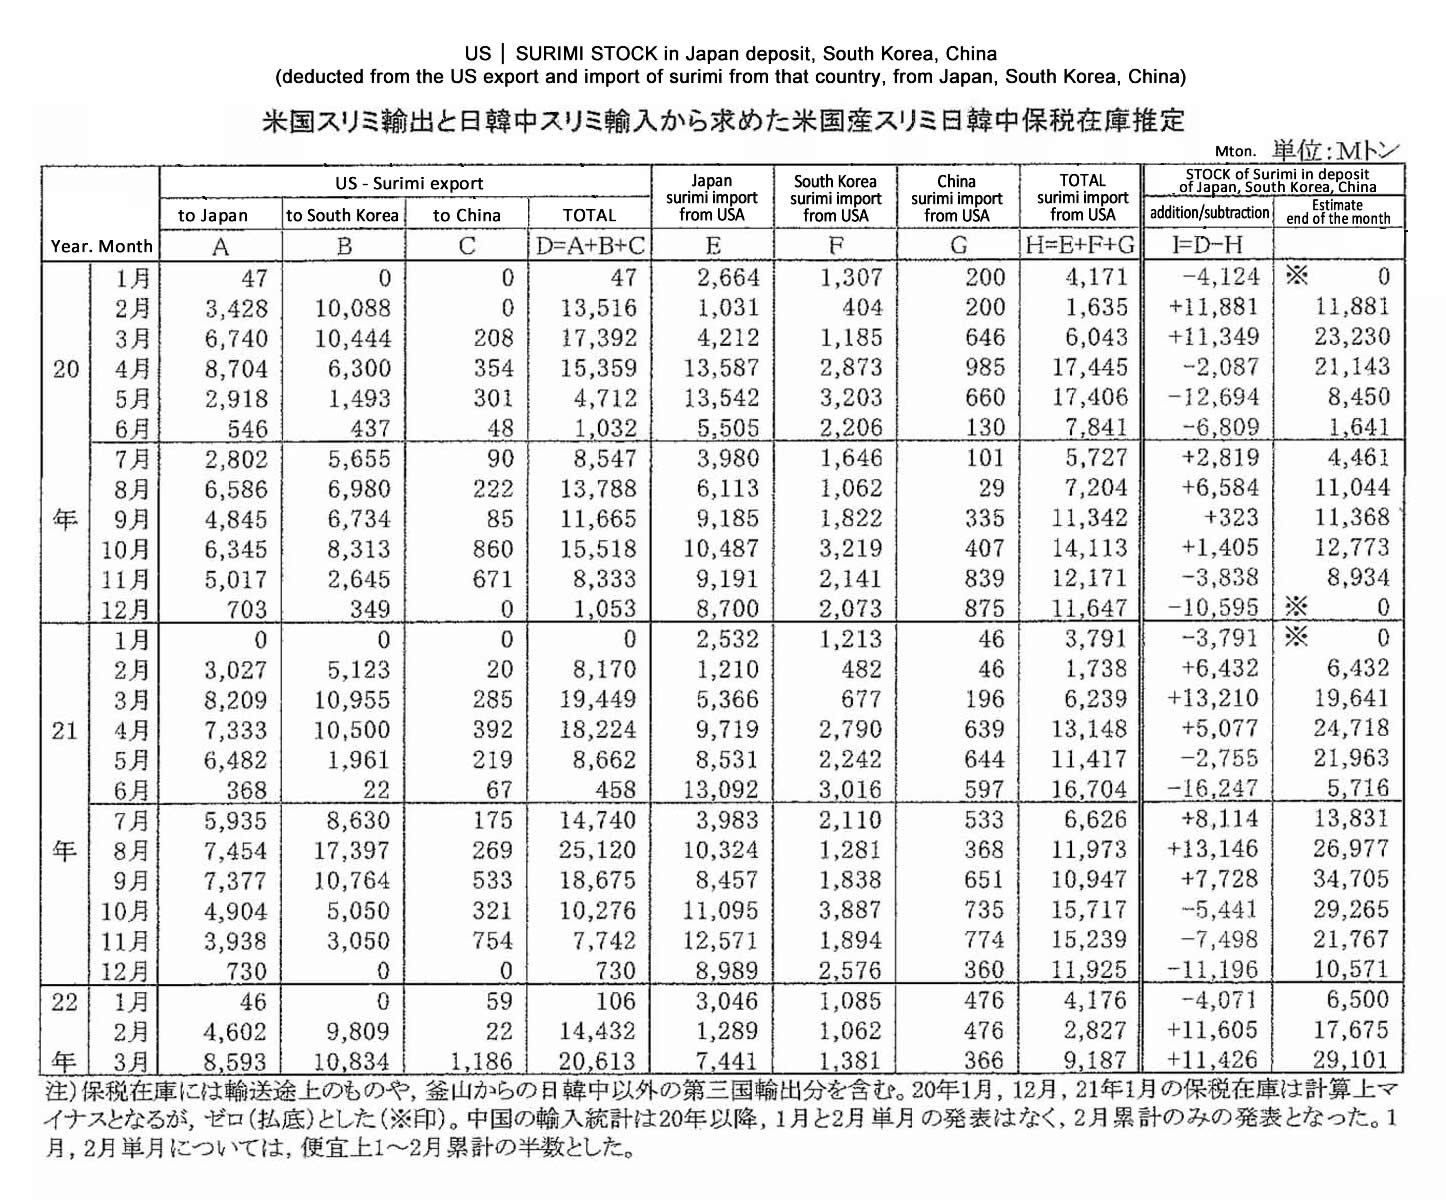 2022051303ing-Stock de surimi estadounidense en deposito de Japon-Corea del Sur-China FIS seafood_media.jpg